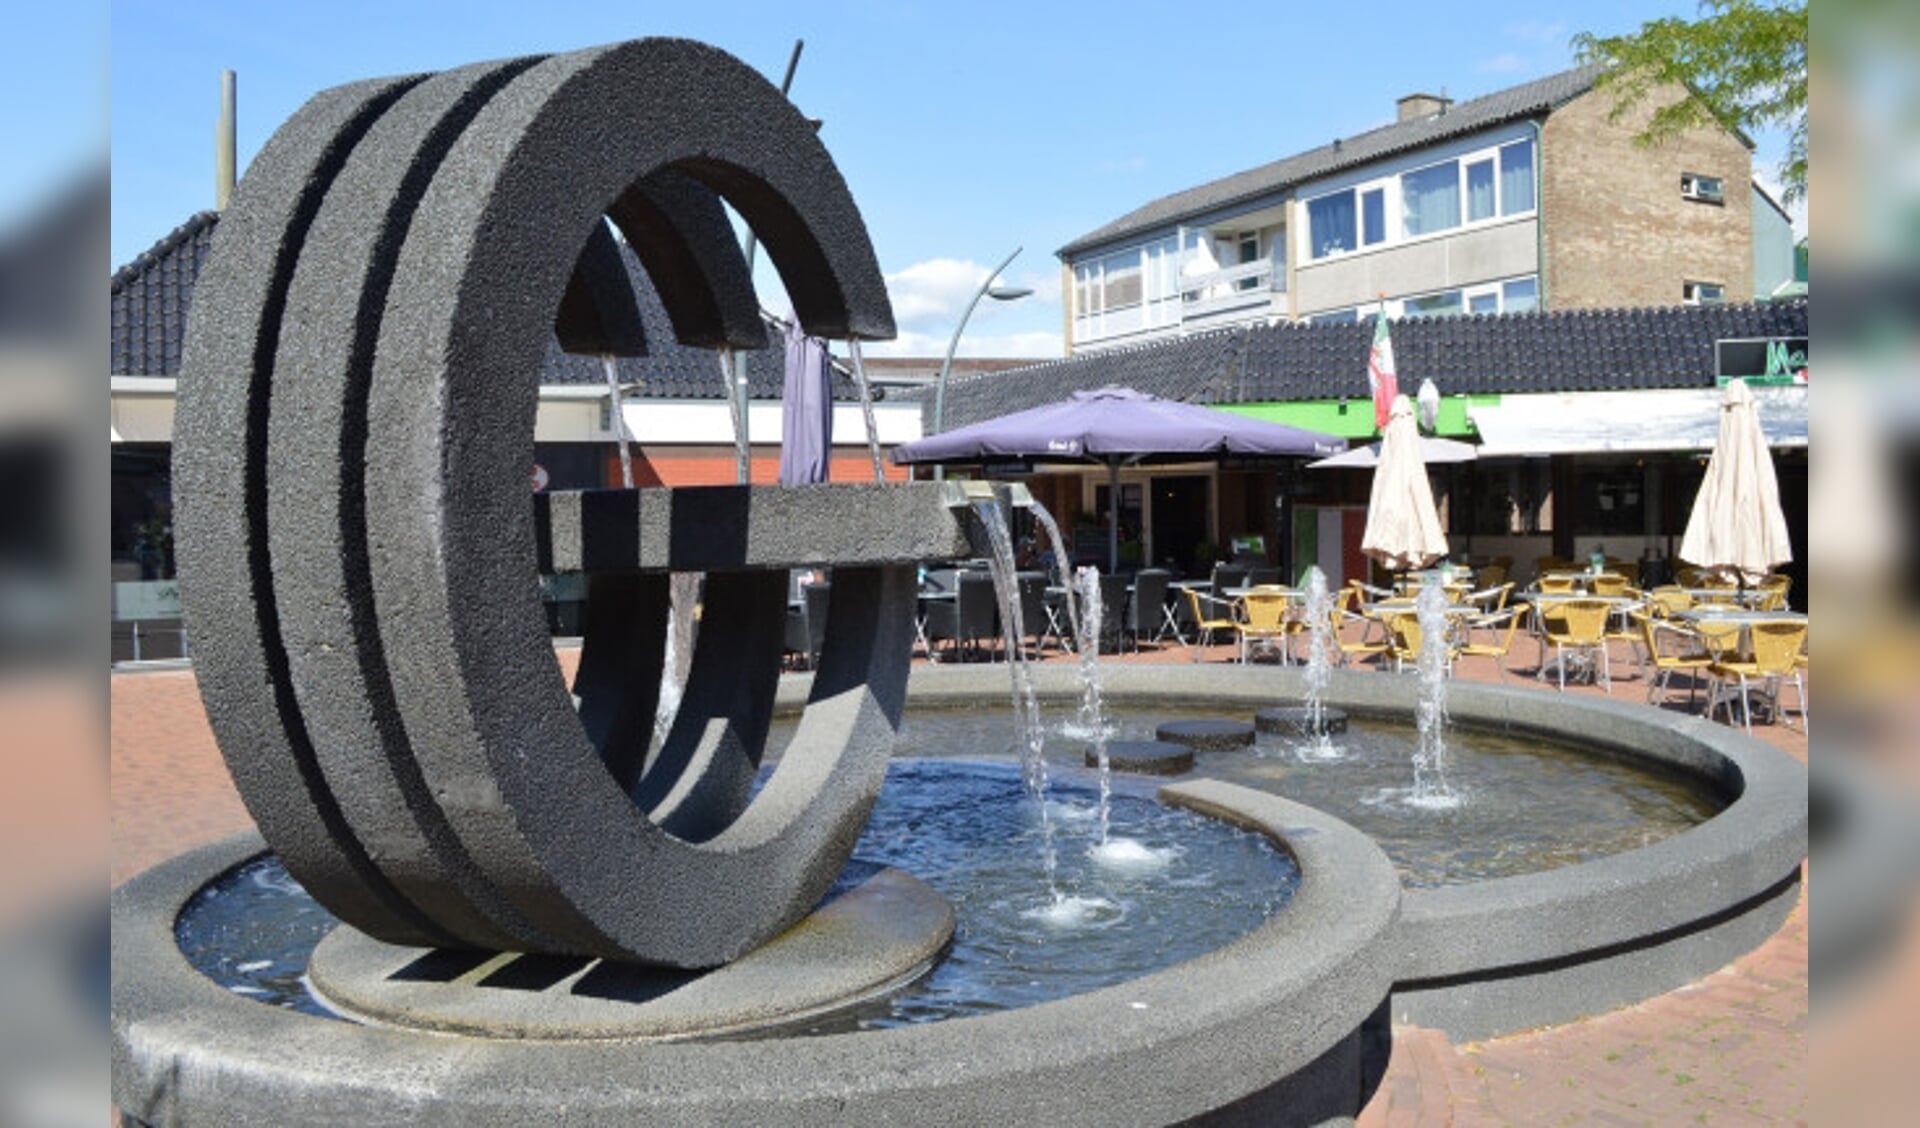  De fontein aan Het Ruim in winkelcentrum Suydersee.